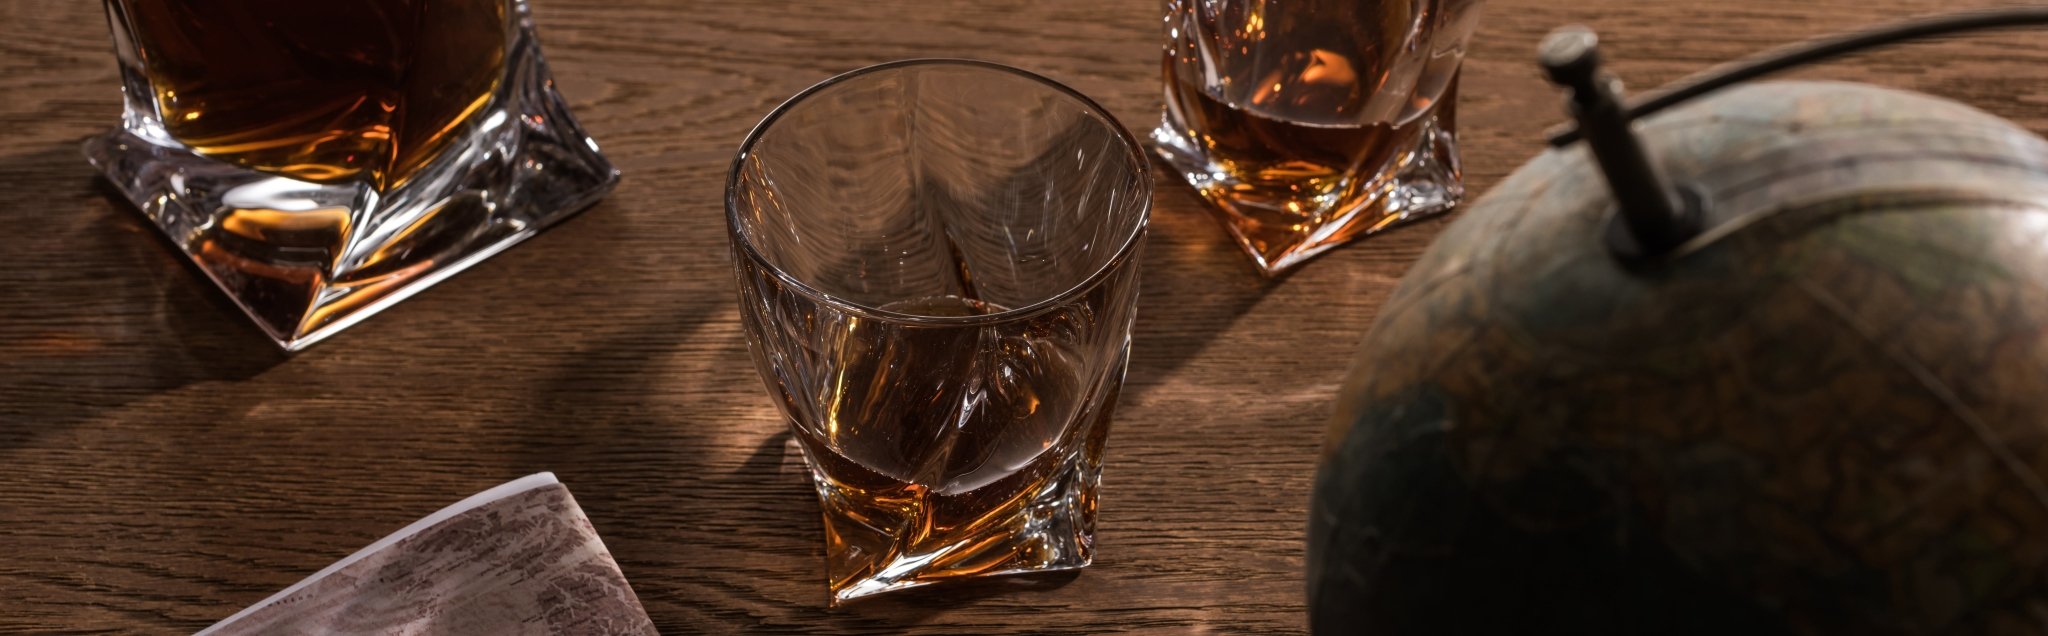 Scotch Whisky - CG Liquor